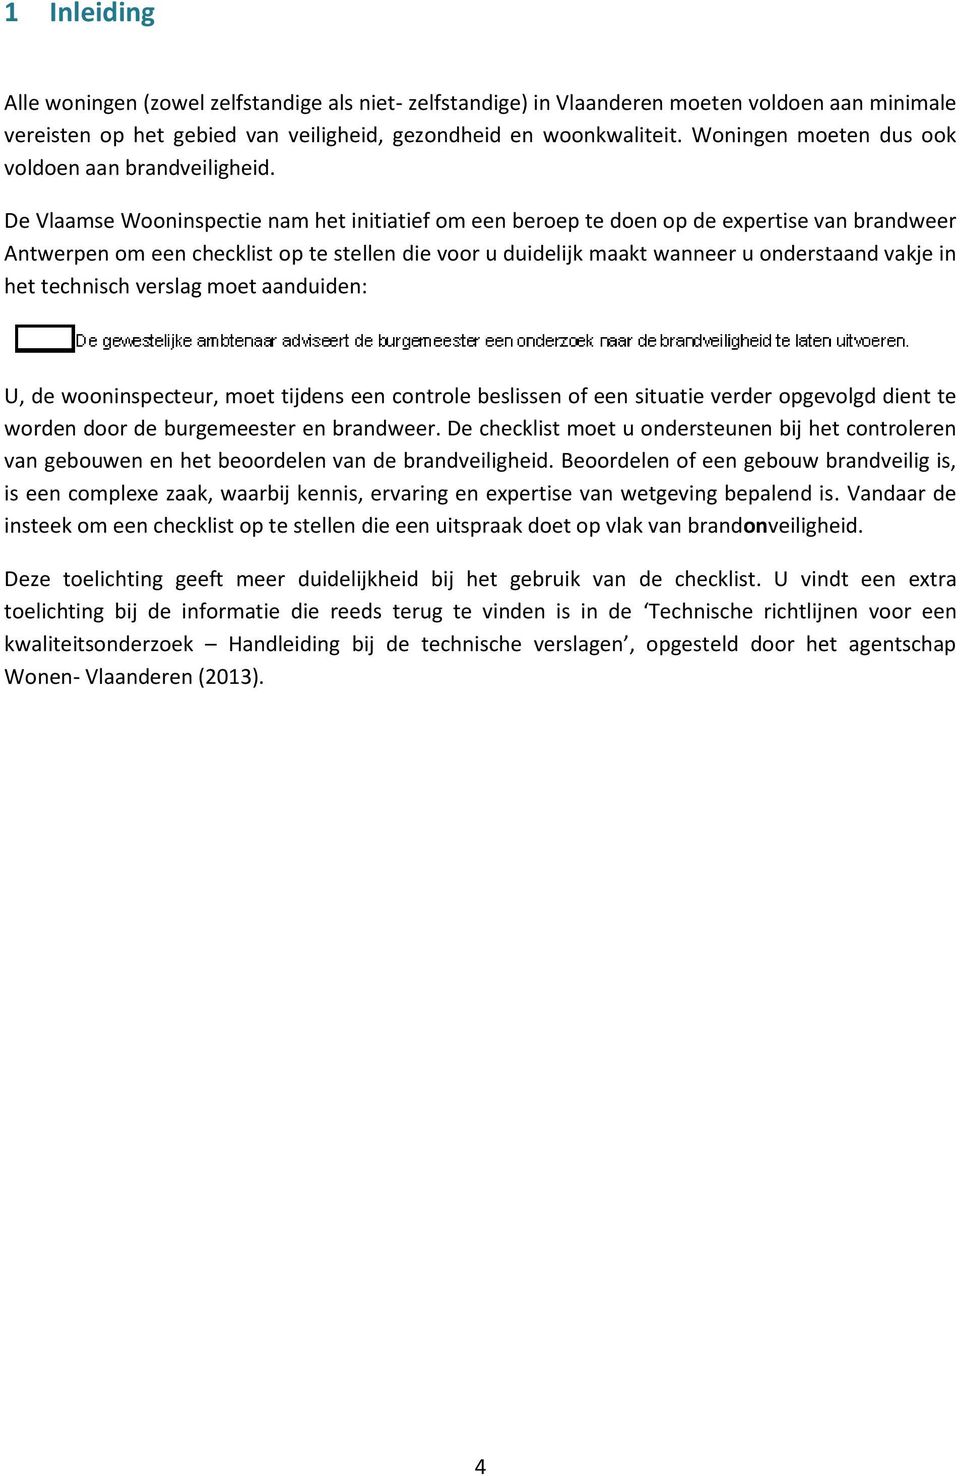 De Vlaamse Wooninspectie nam het initiatief om een beroep te doen op de expertise van brandweer Antwerpen om een checklist op te stellen die voor u duidelijk maakt wanneer u onderstaand vakje in het